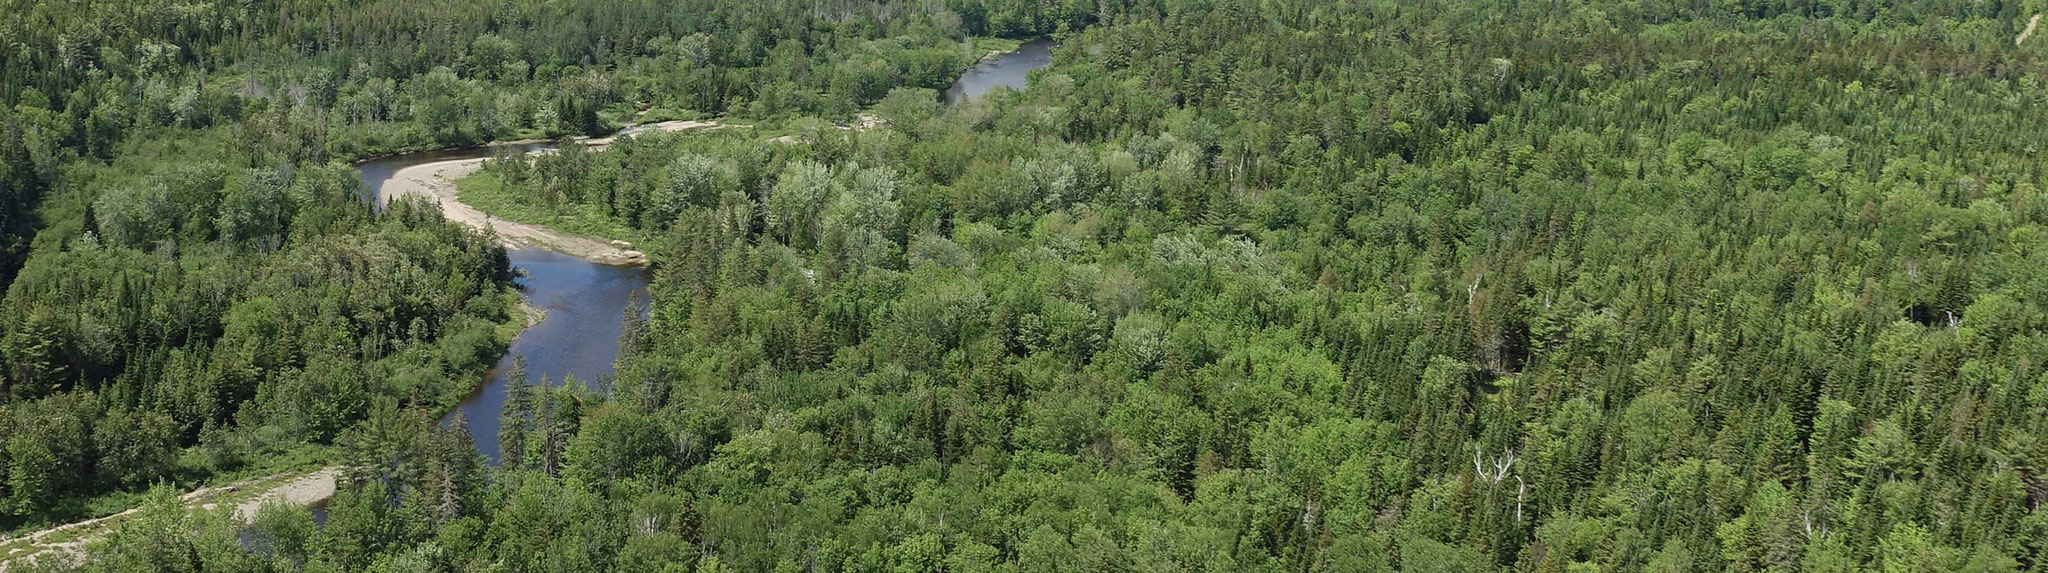 title:Boyd Mountain Forest,title2:Wald mit Ufer,provinz:New Brunswick,bezirk:Albert,art:Mischwald,flaeche:237 ha,ufer:3.000 Meter,preis: verkauft